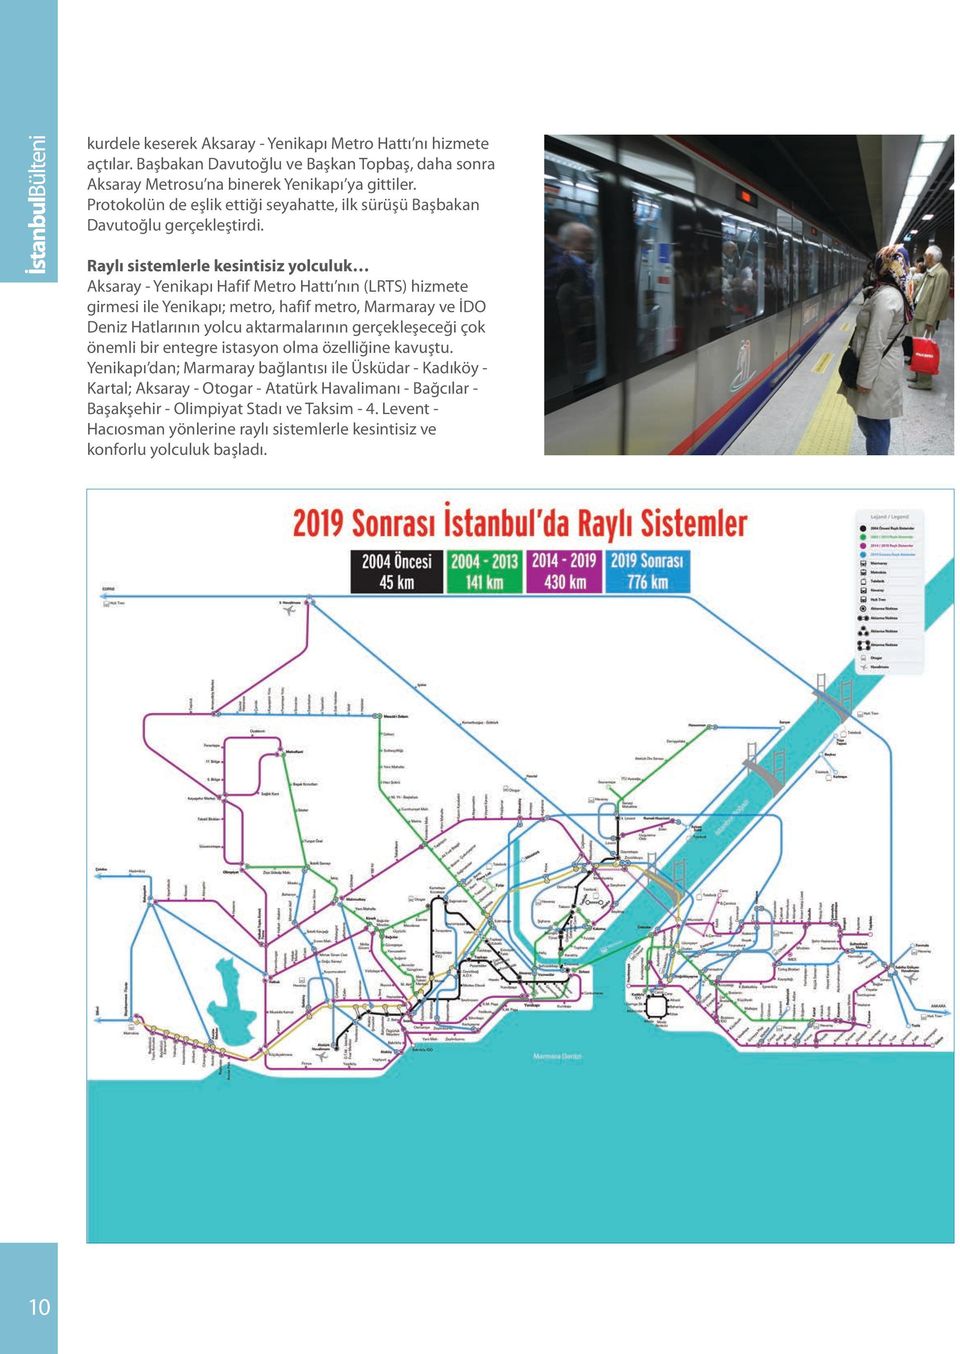 Raylı sistemlerle kesintisiz yolculuk Aksaray - Yenikapı Hafif Metro Hattı nın (LRTS) hizmete girmesi ile Yenikapı; metro, hafif metro, Marmaray ve İDO Deniz Hatlarının yolcu aktarmalarının